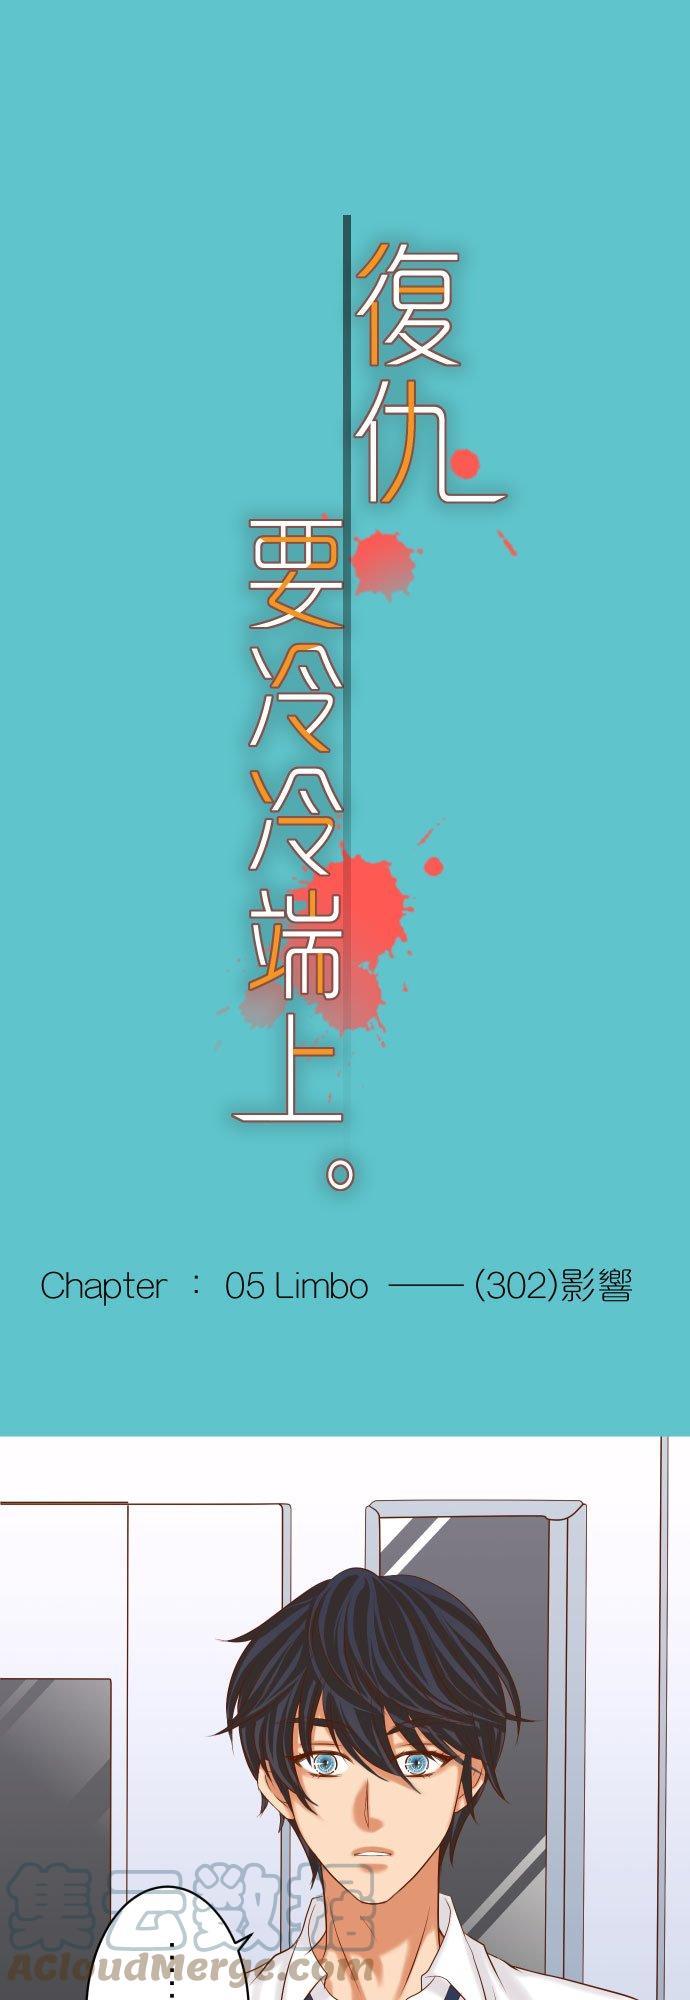 第五章 Limbo 302 影响0